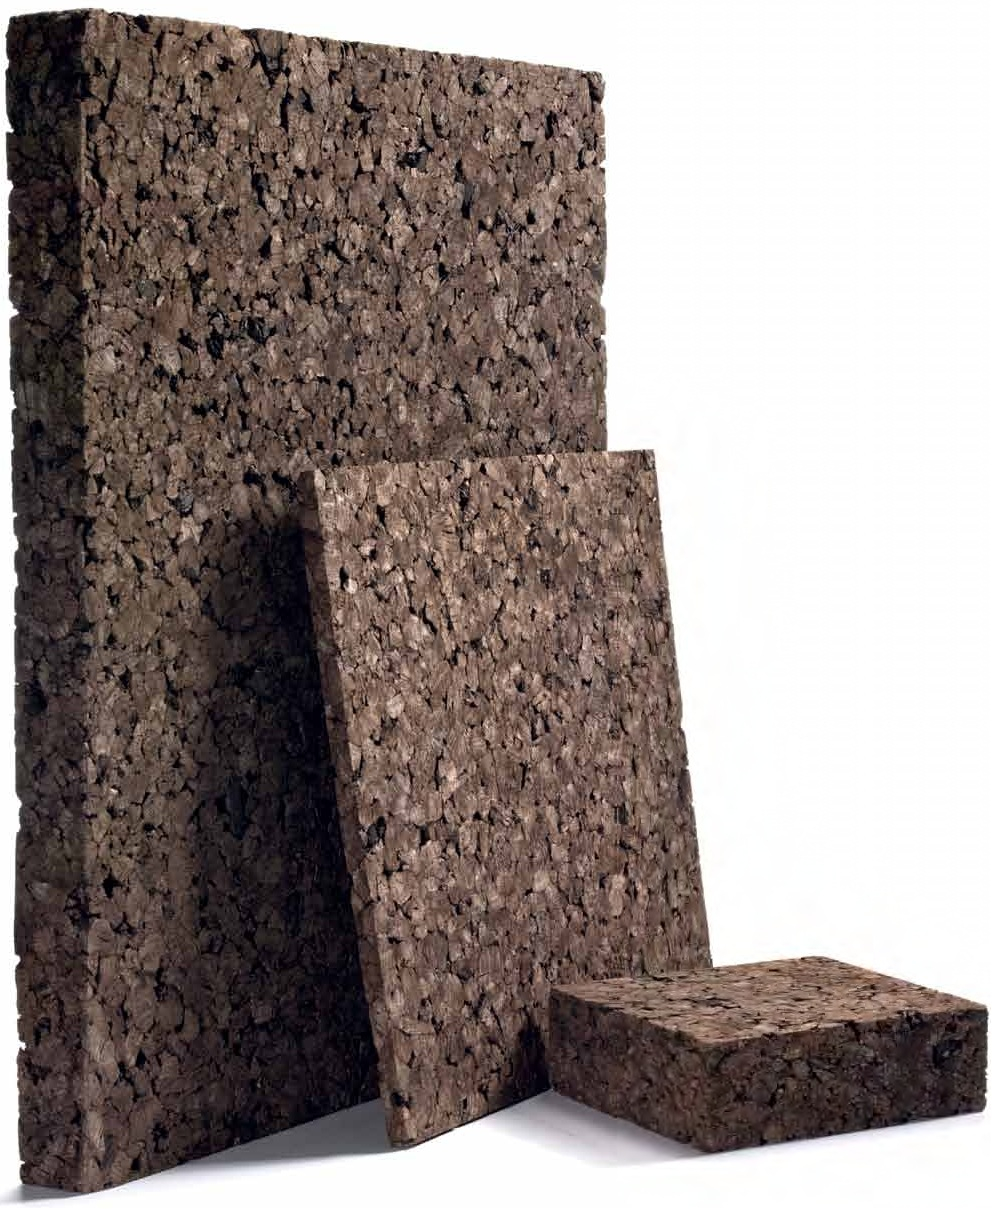 Pannello Lana di Roccia Minerale - Spessore 40 mm - Fonoisolante Acustico Isolante  Termico Pareti Soffitto 